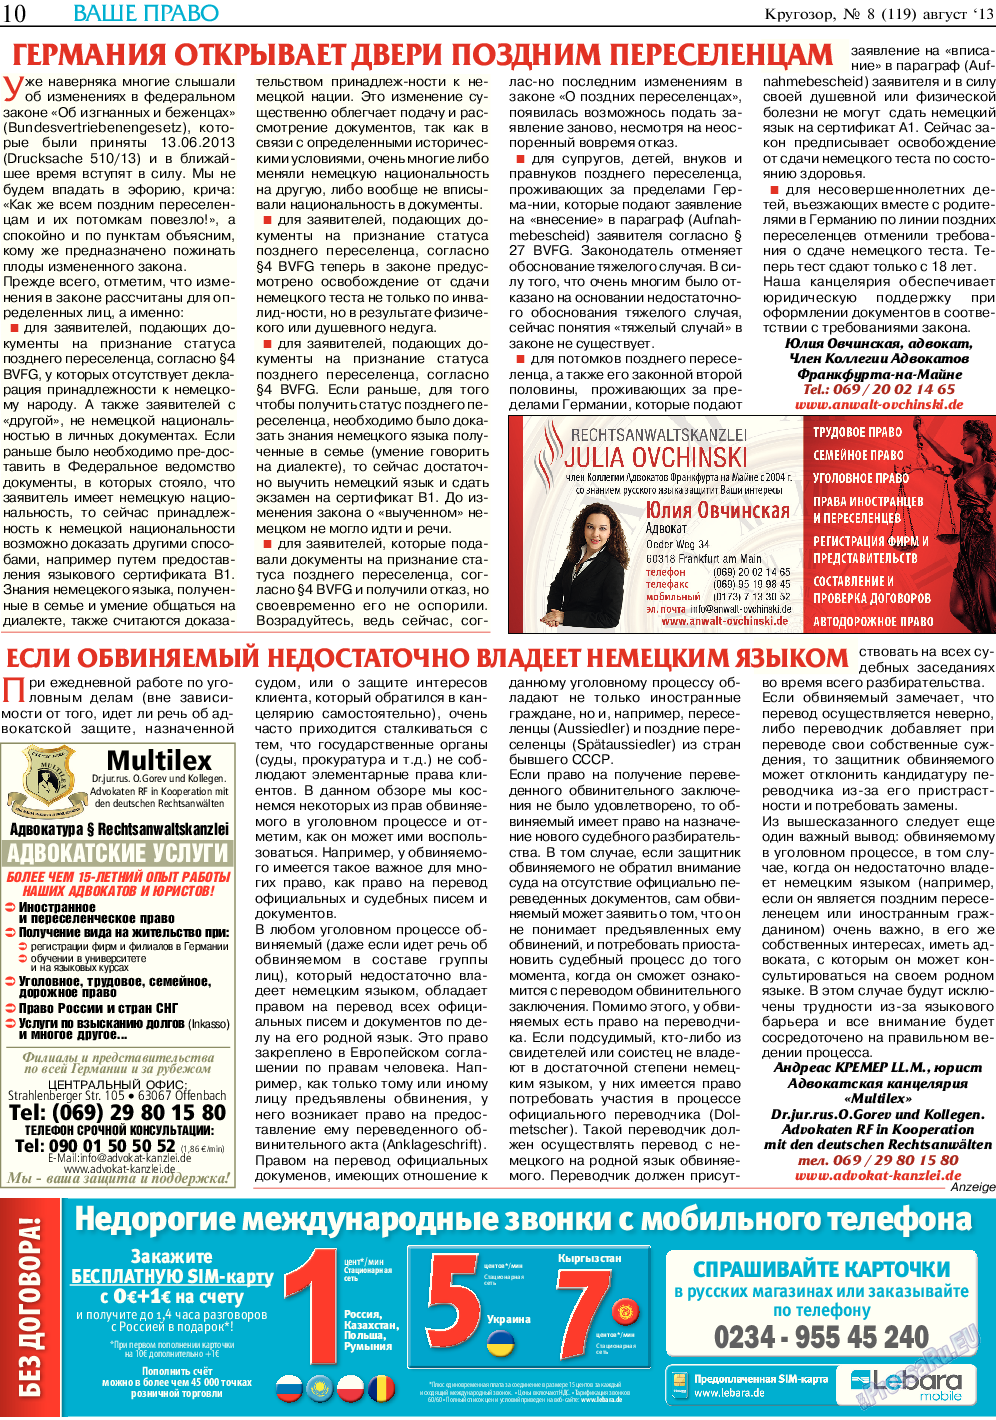 Кругозор, газета. 2013 №8 стр.10